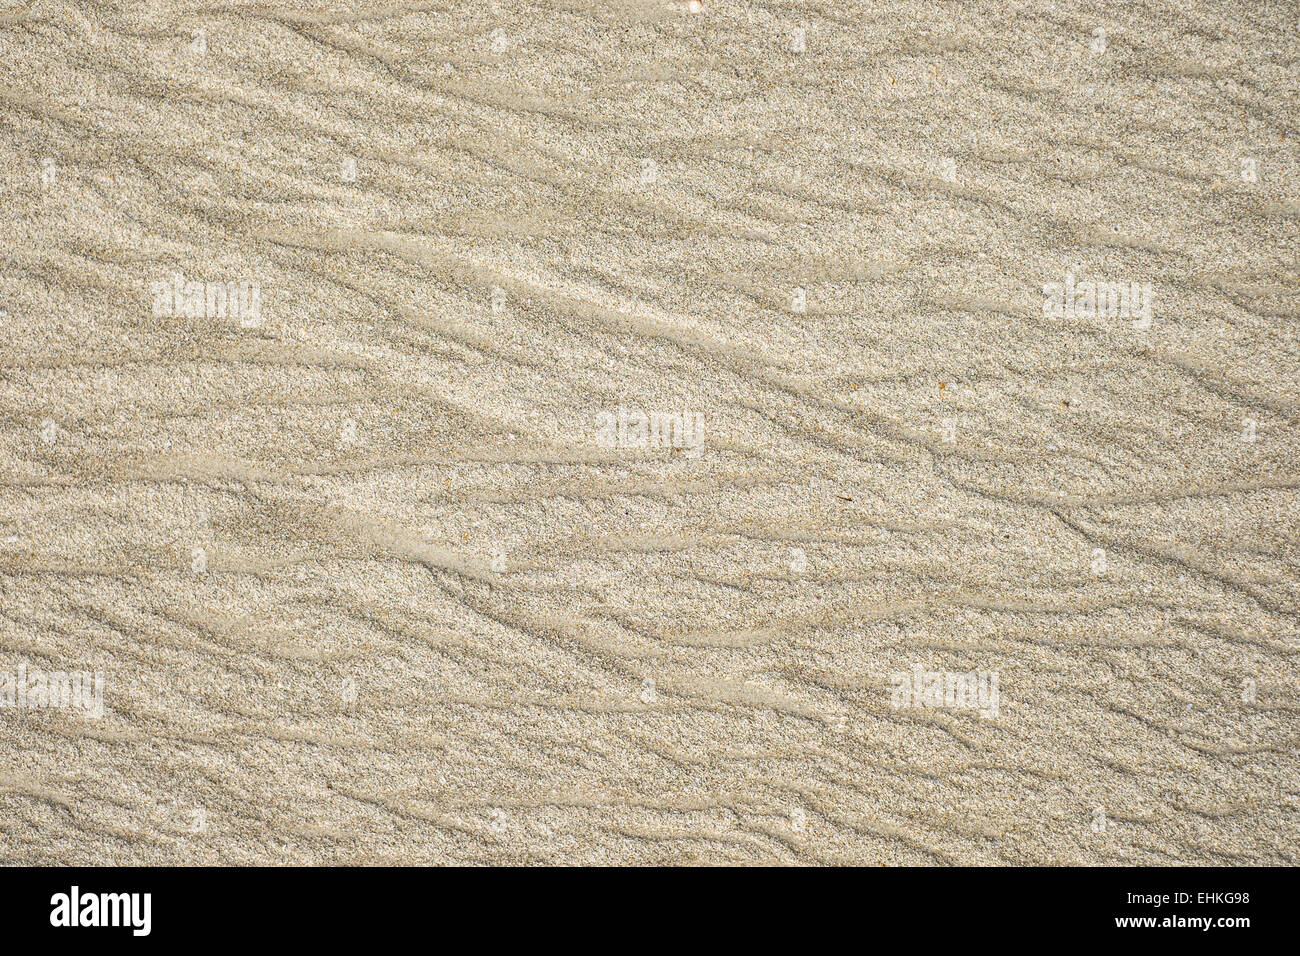 Texture di sabbia sulla spiaggia, con disegni realizzati dal mare. Foto Stock